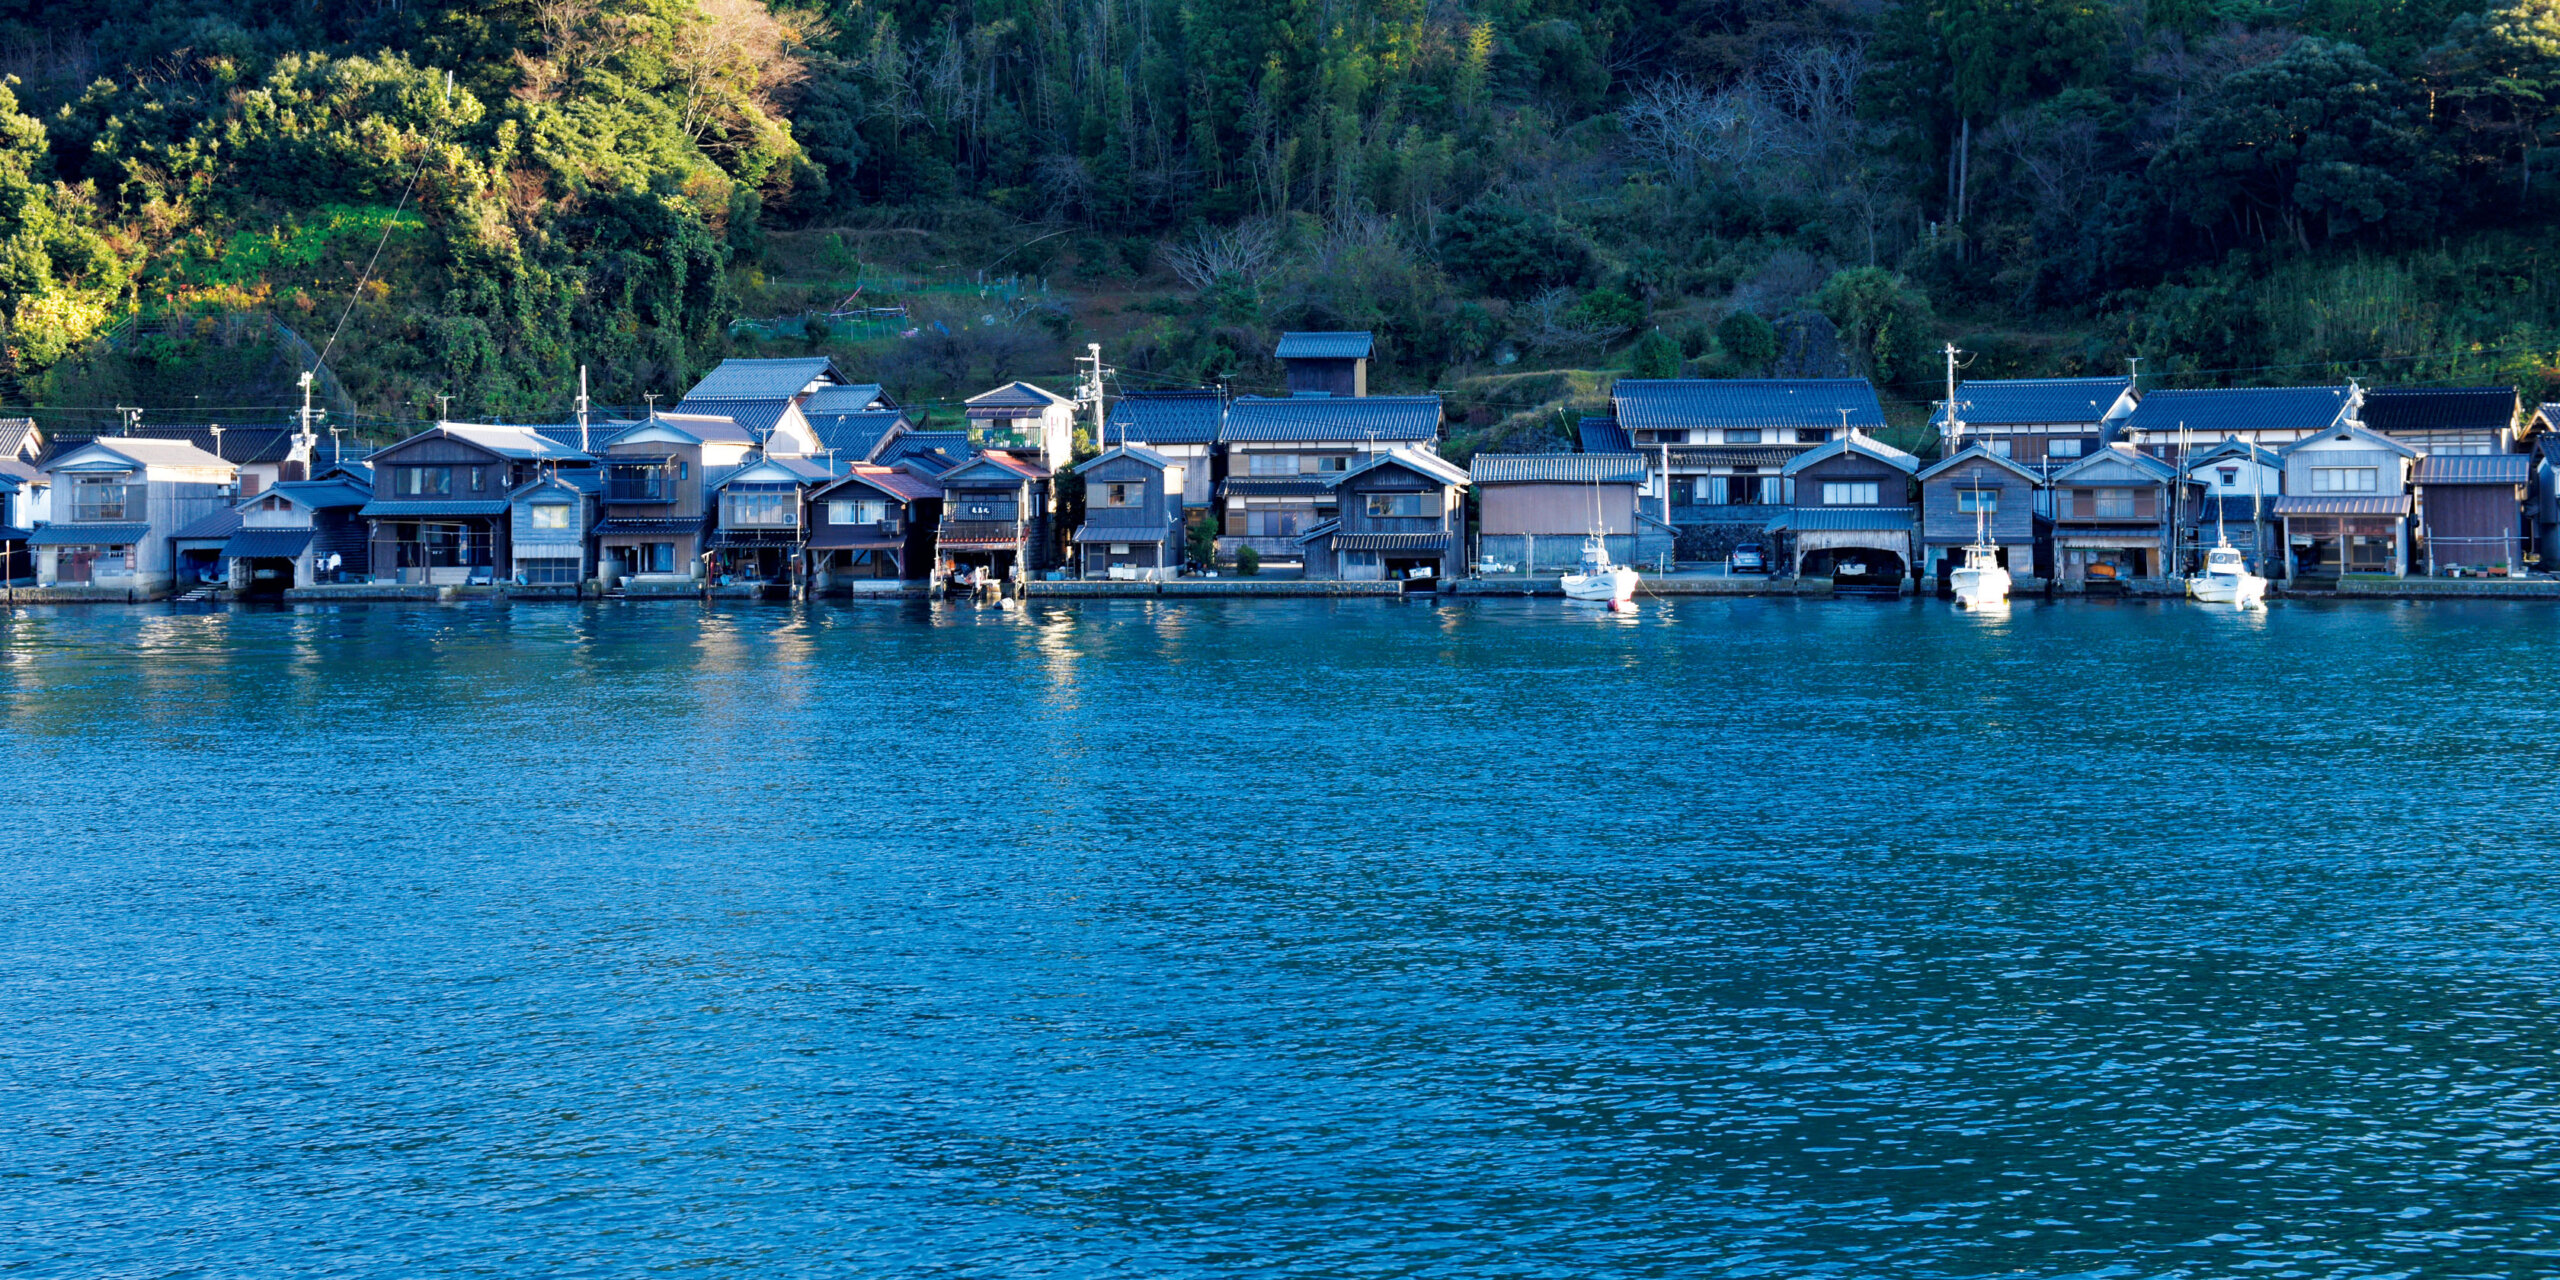 『伊根の舟屋』<br />
舟屋は国の重要伝統的建造物群保存地区にも選定されている